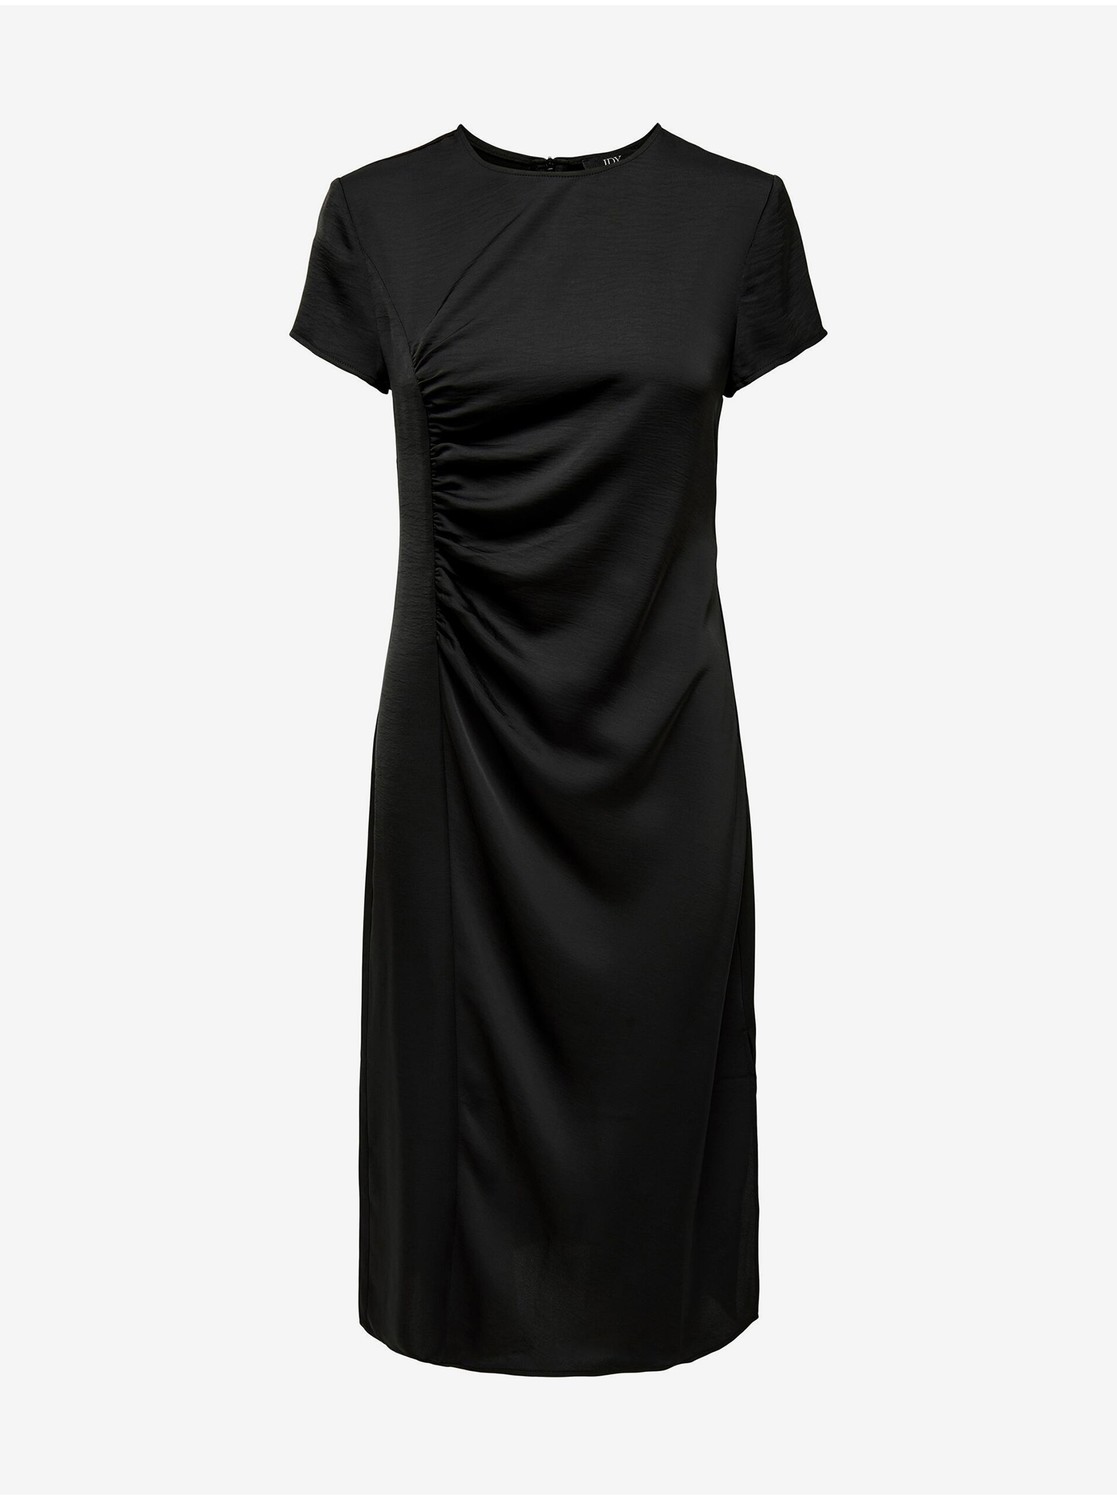 Černé dámské šaty JDY Urba - Dámské